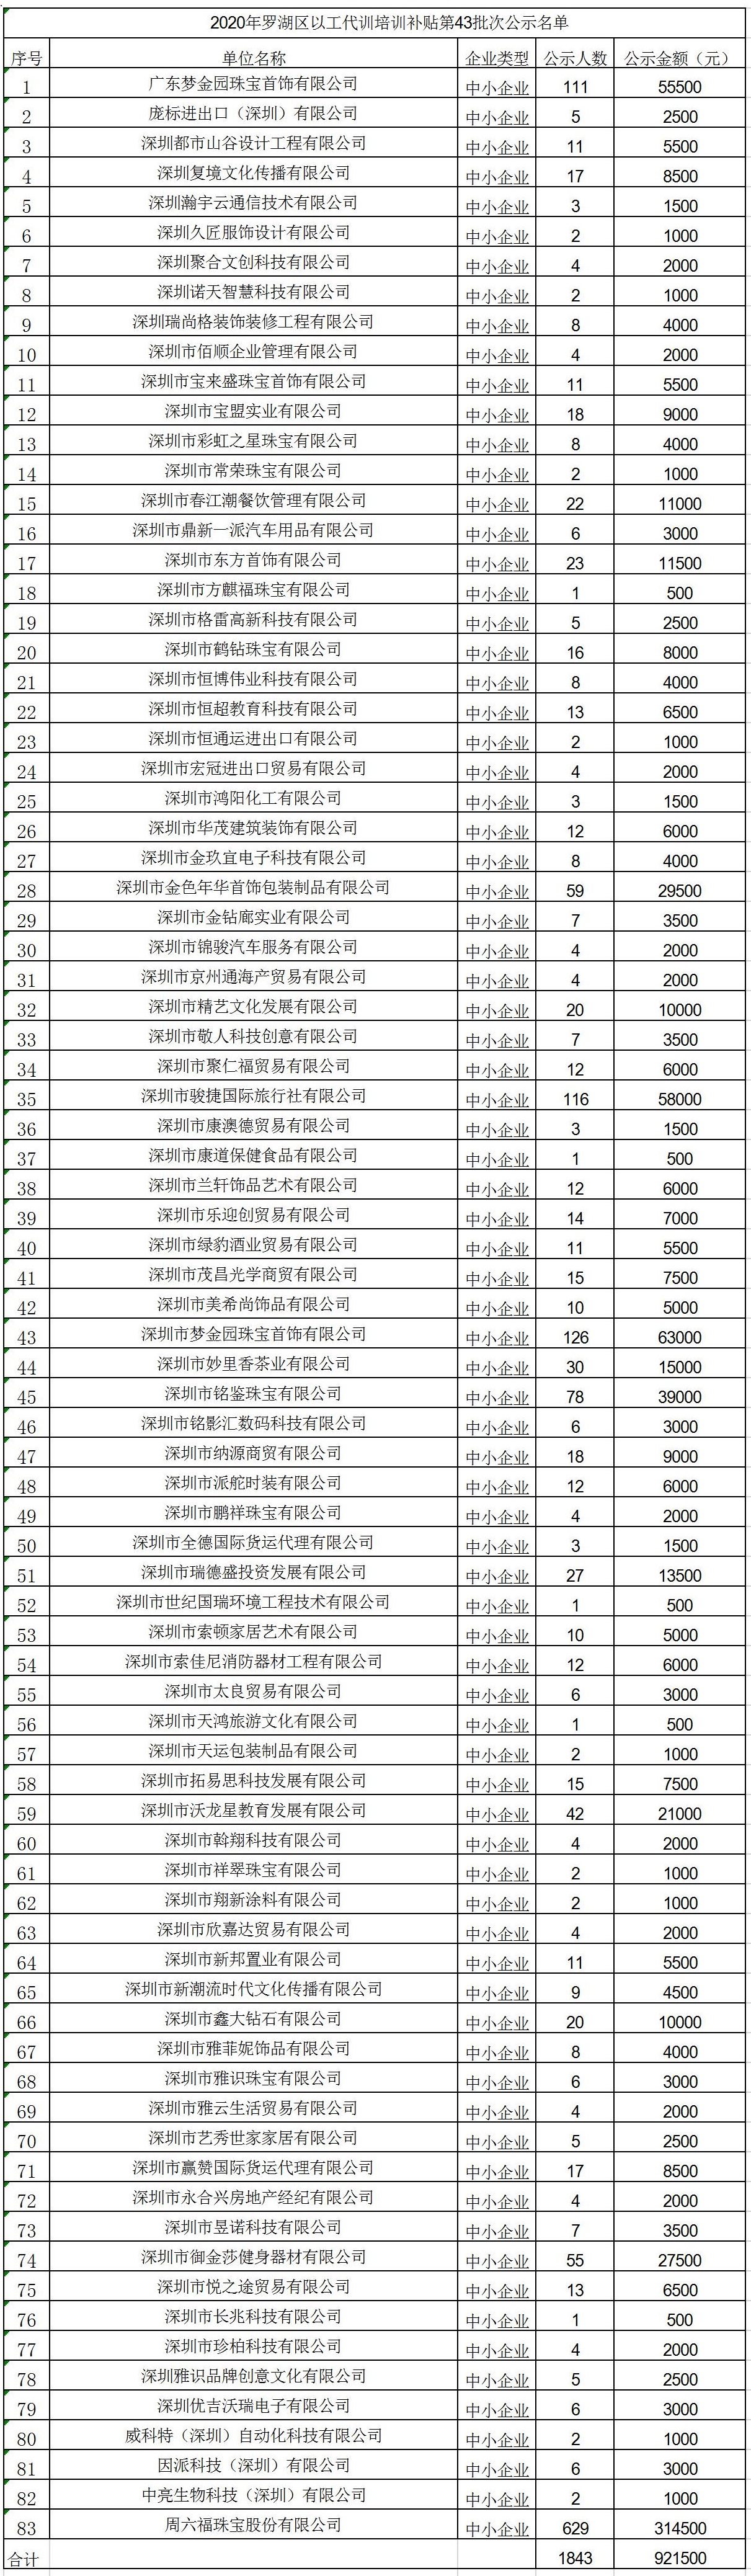 2020年深圳市罗湖区以工代训培训补贴第43批次公示名单.jpg